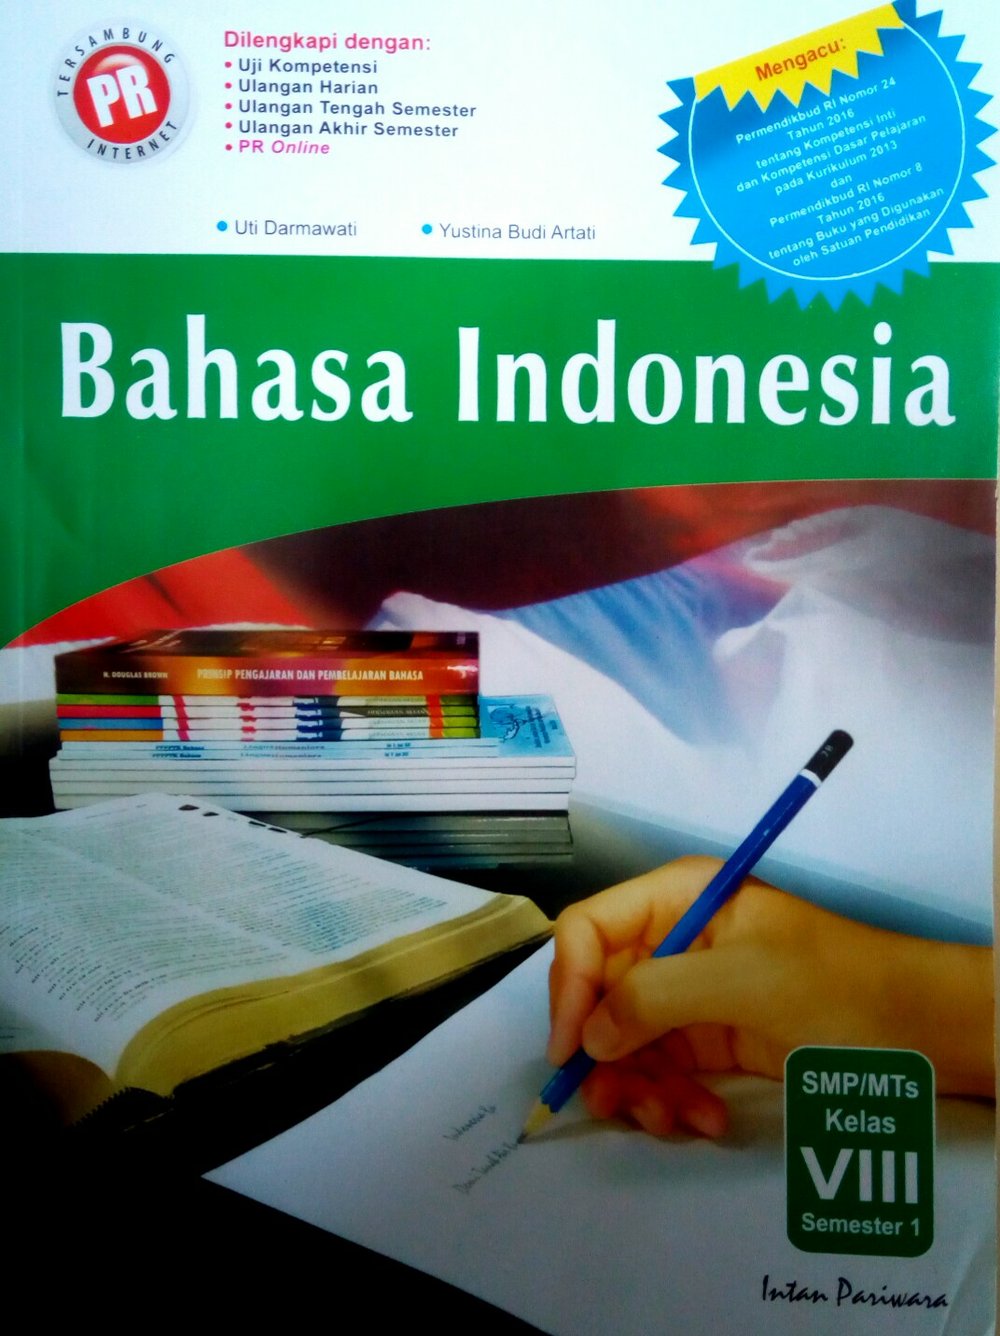 Download buku fotografi bahasa indonesia